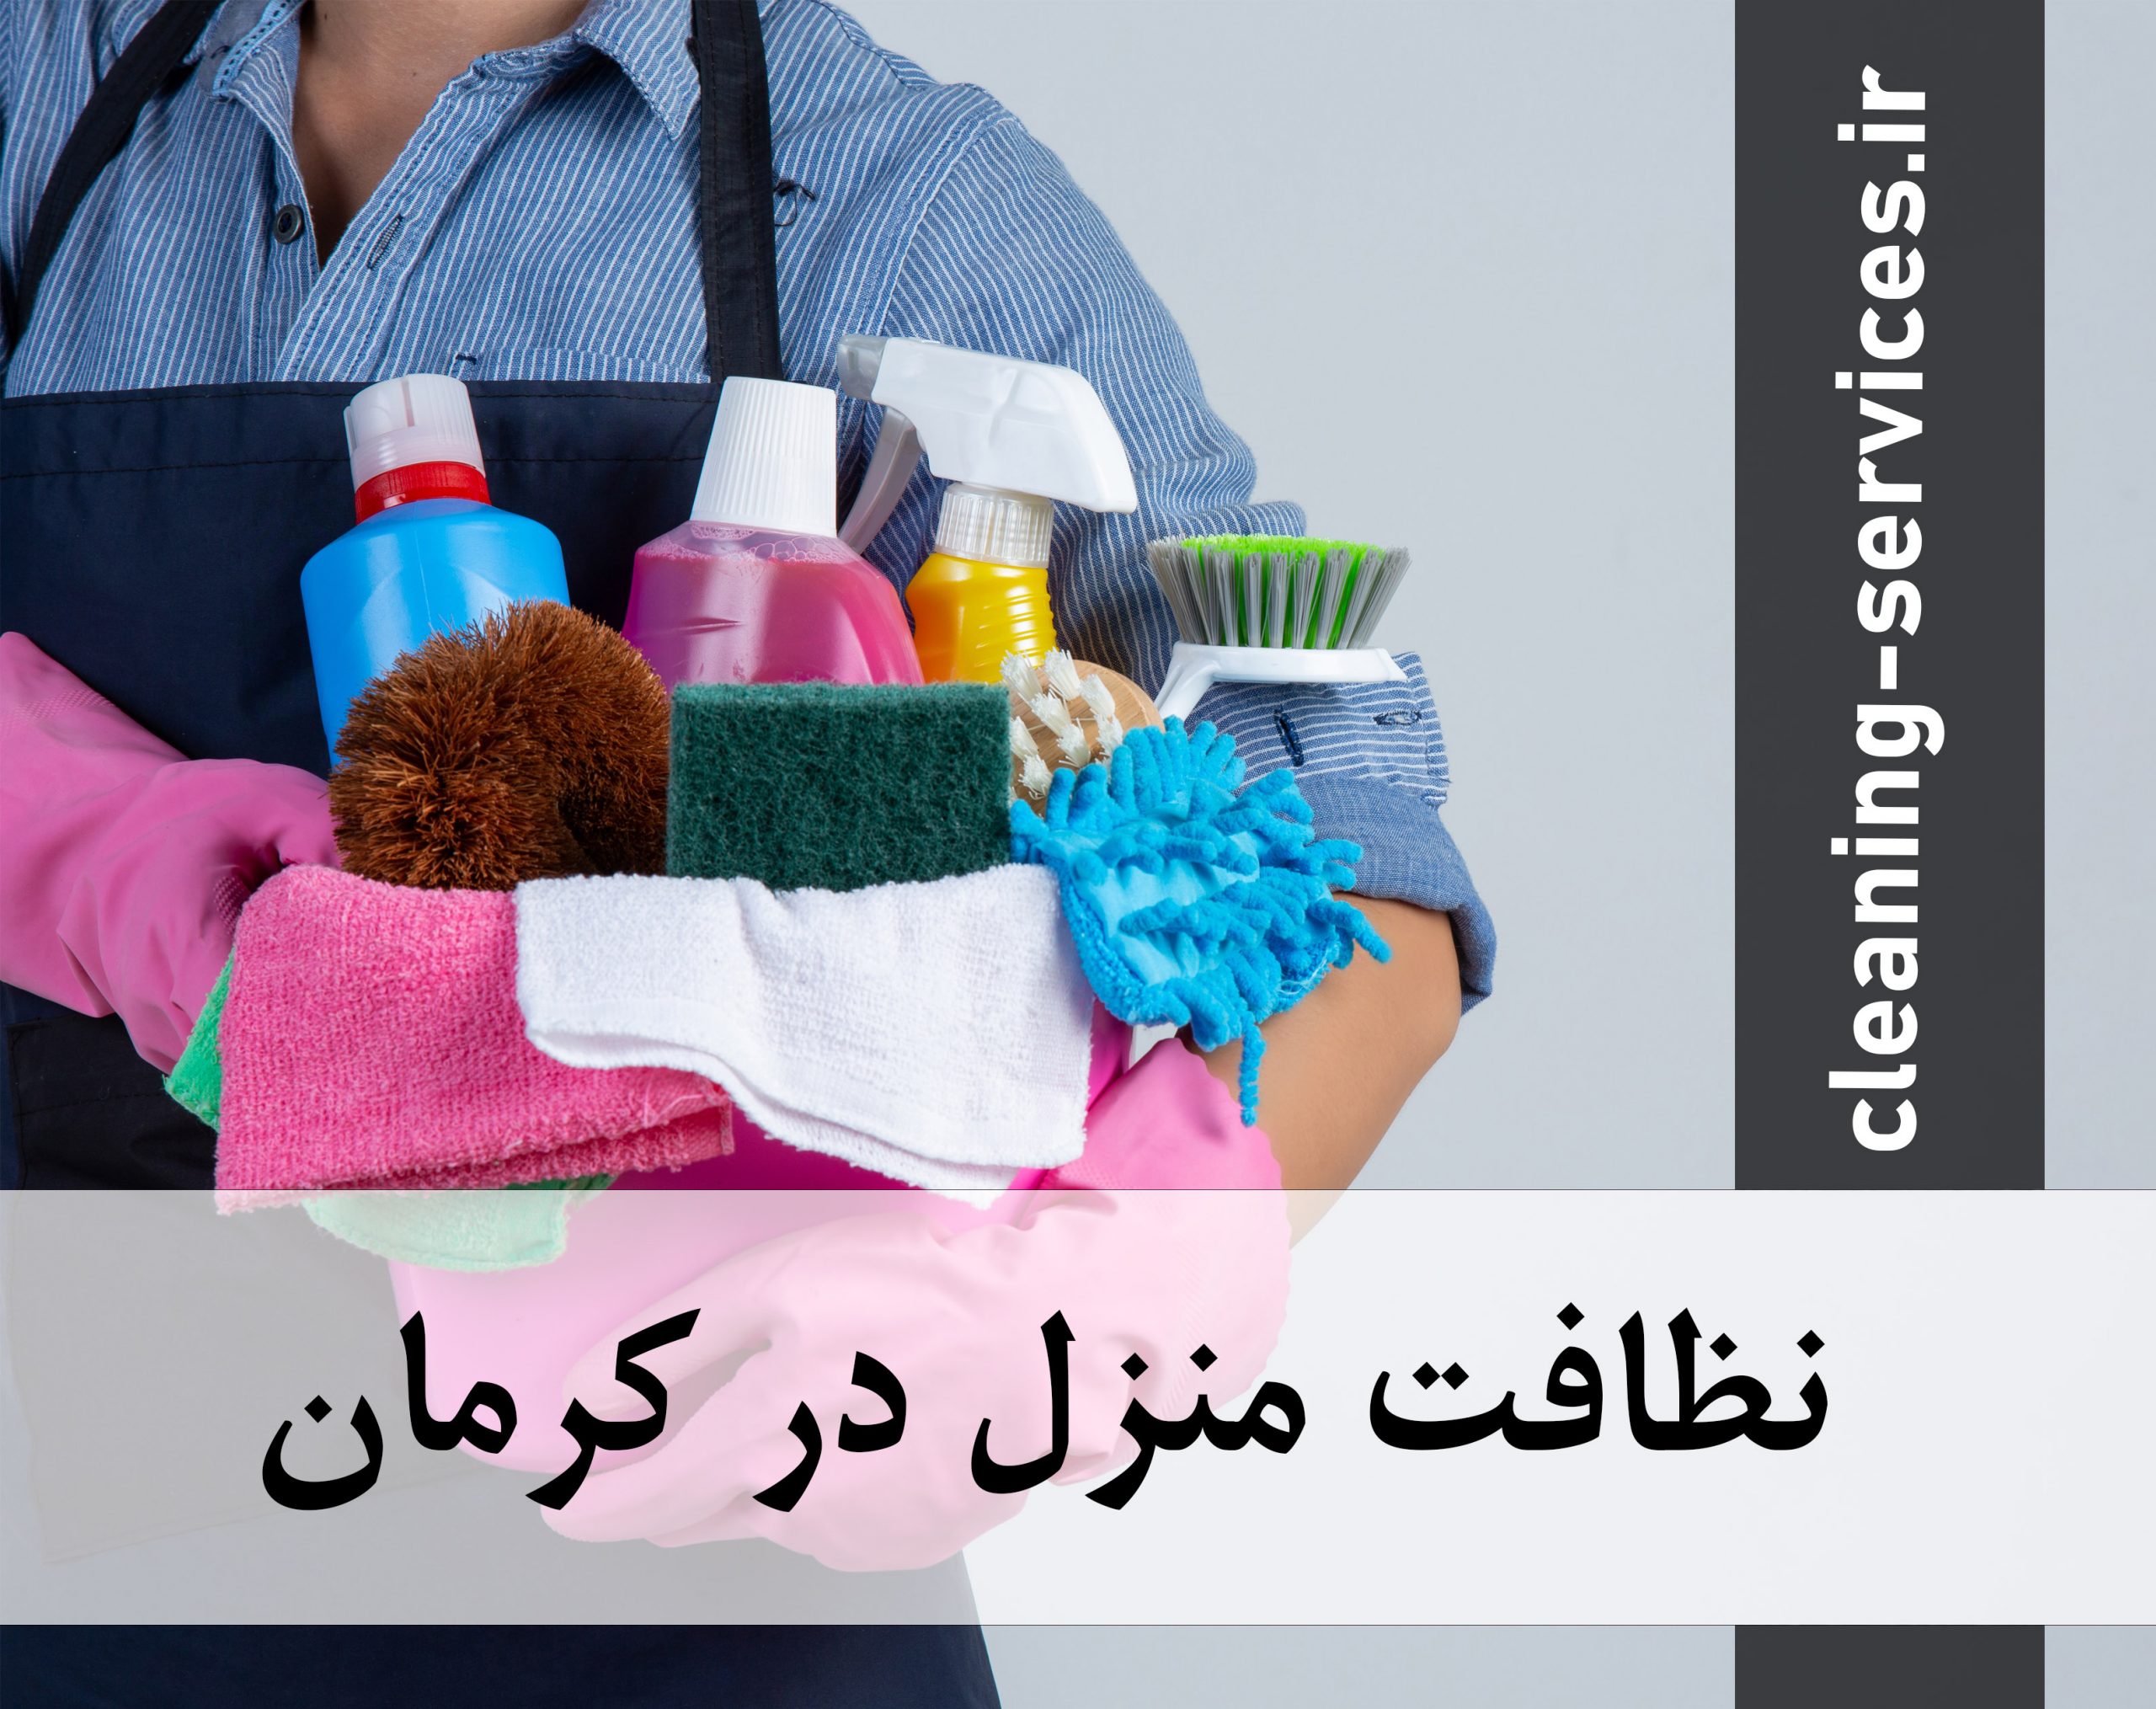 نظافت منزل در کرمان